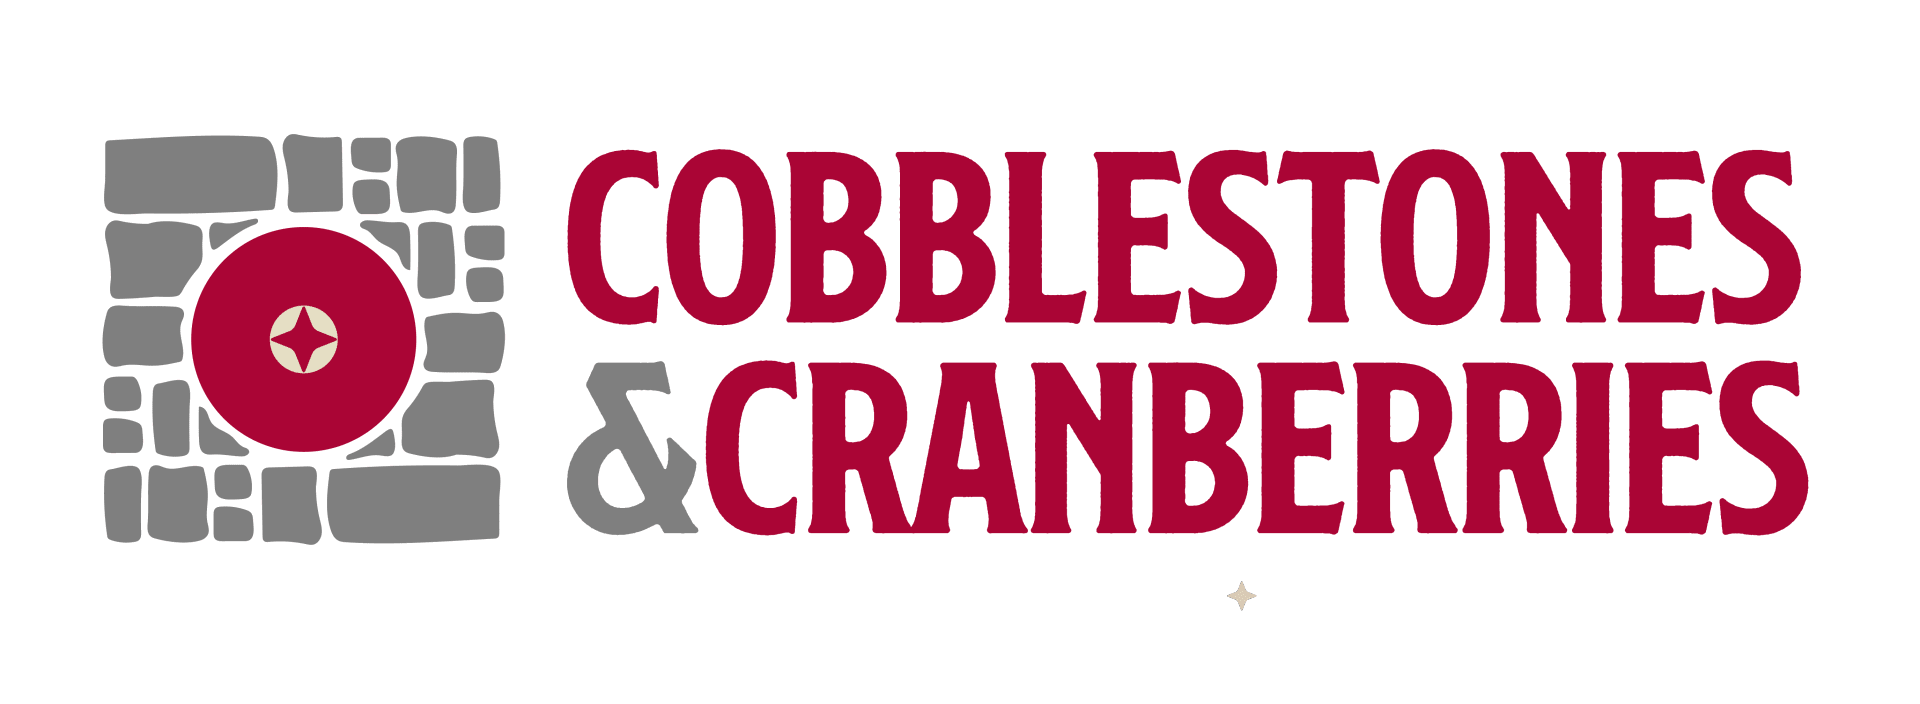 cobblestones & Cranberries logo